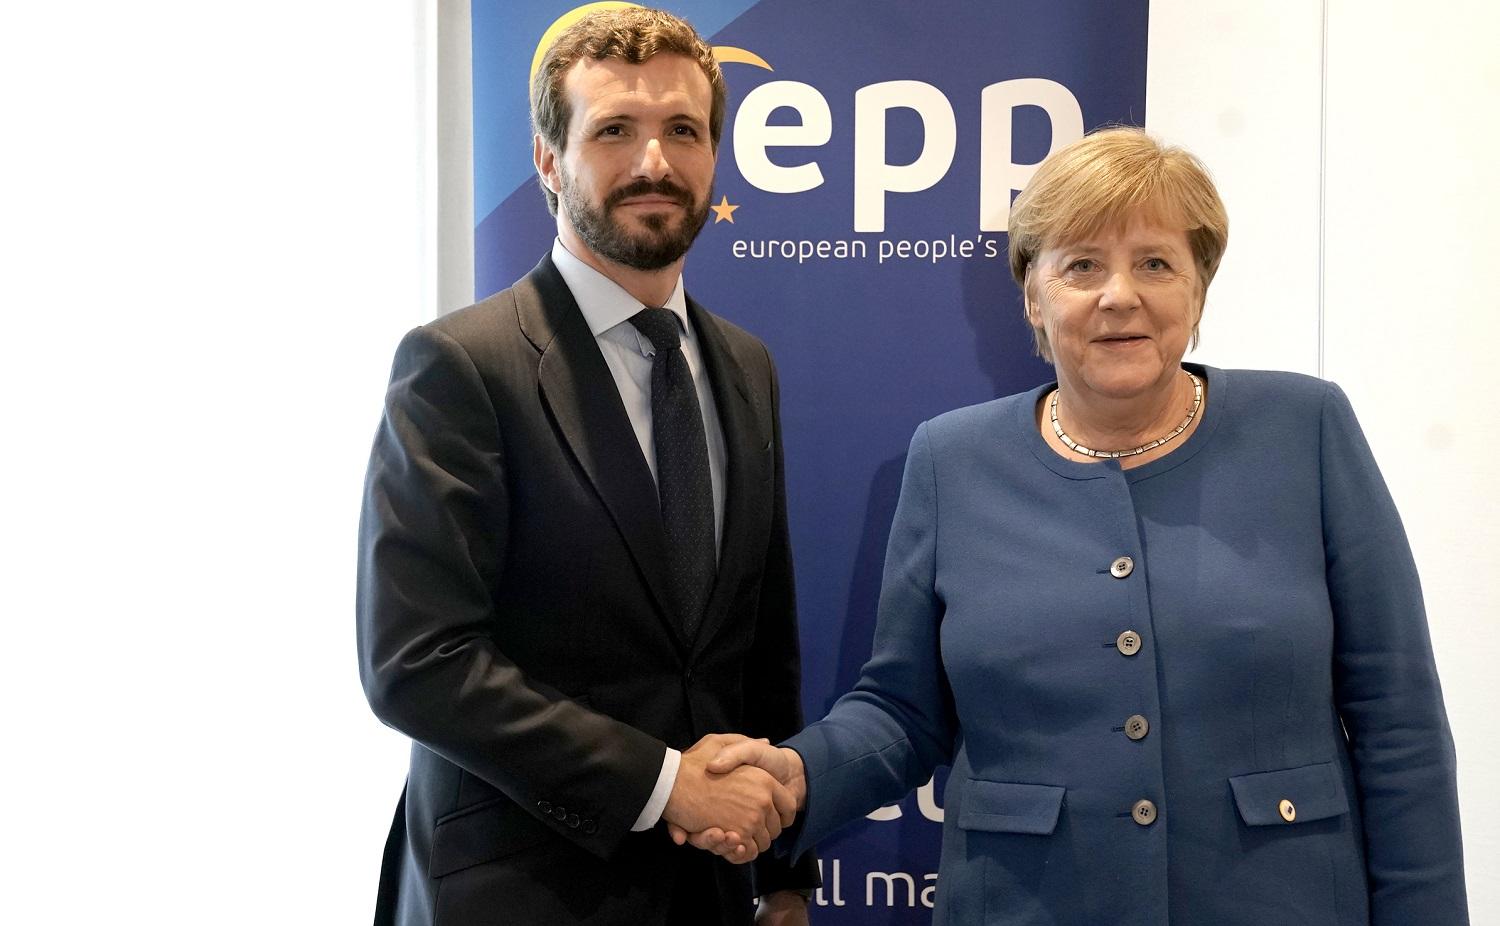 Pablo Casado junto a Angela Merkel en una imagen de archivo. Fuente: PP.